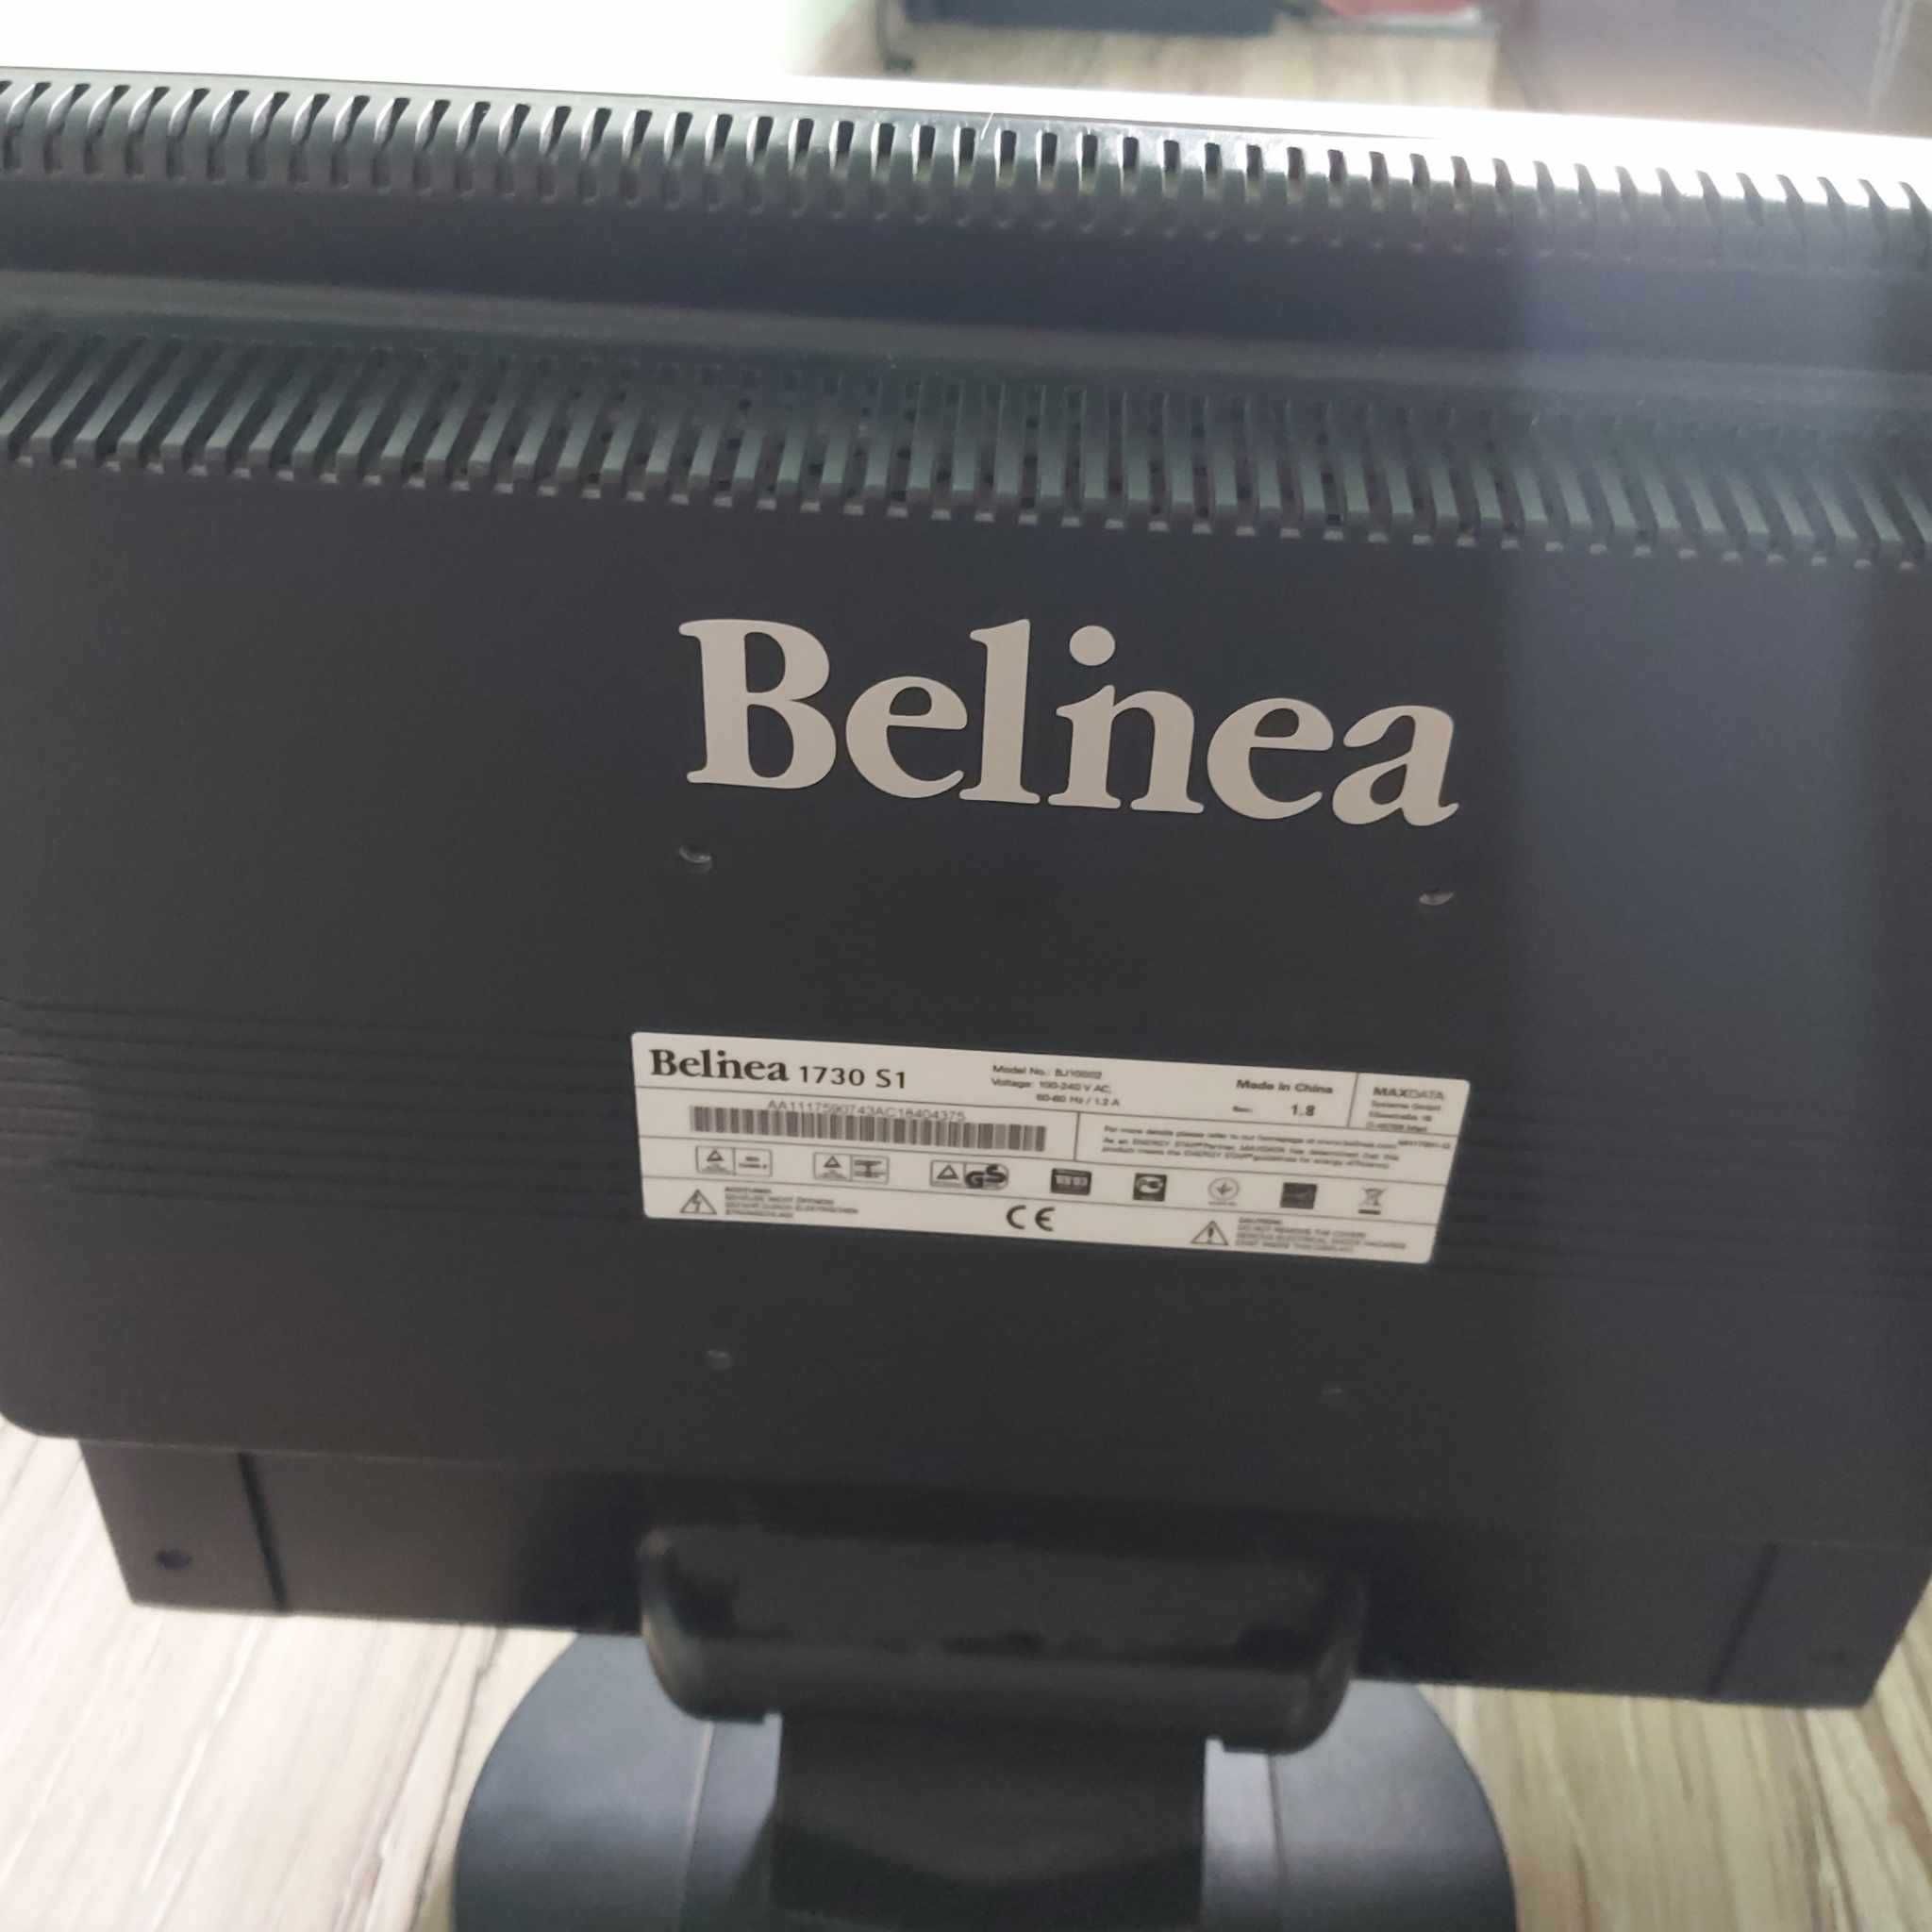 Belinea 1730s monitor